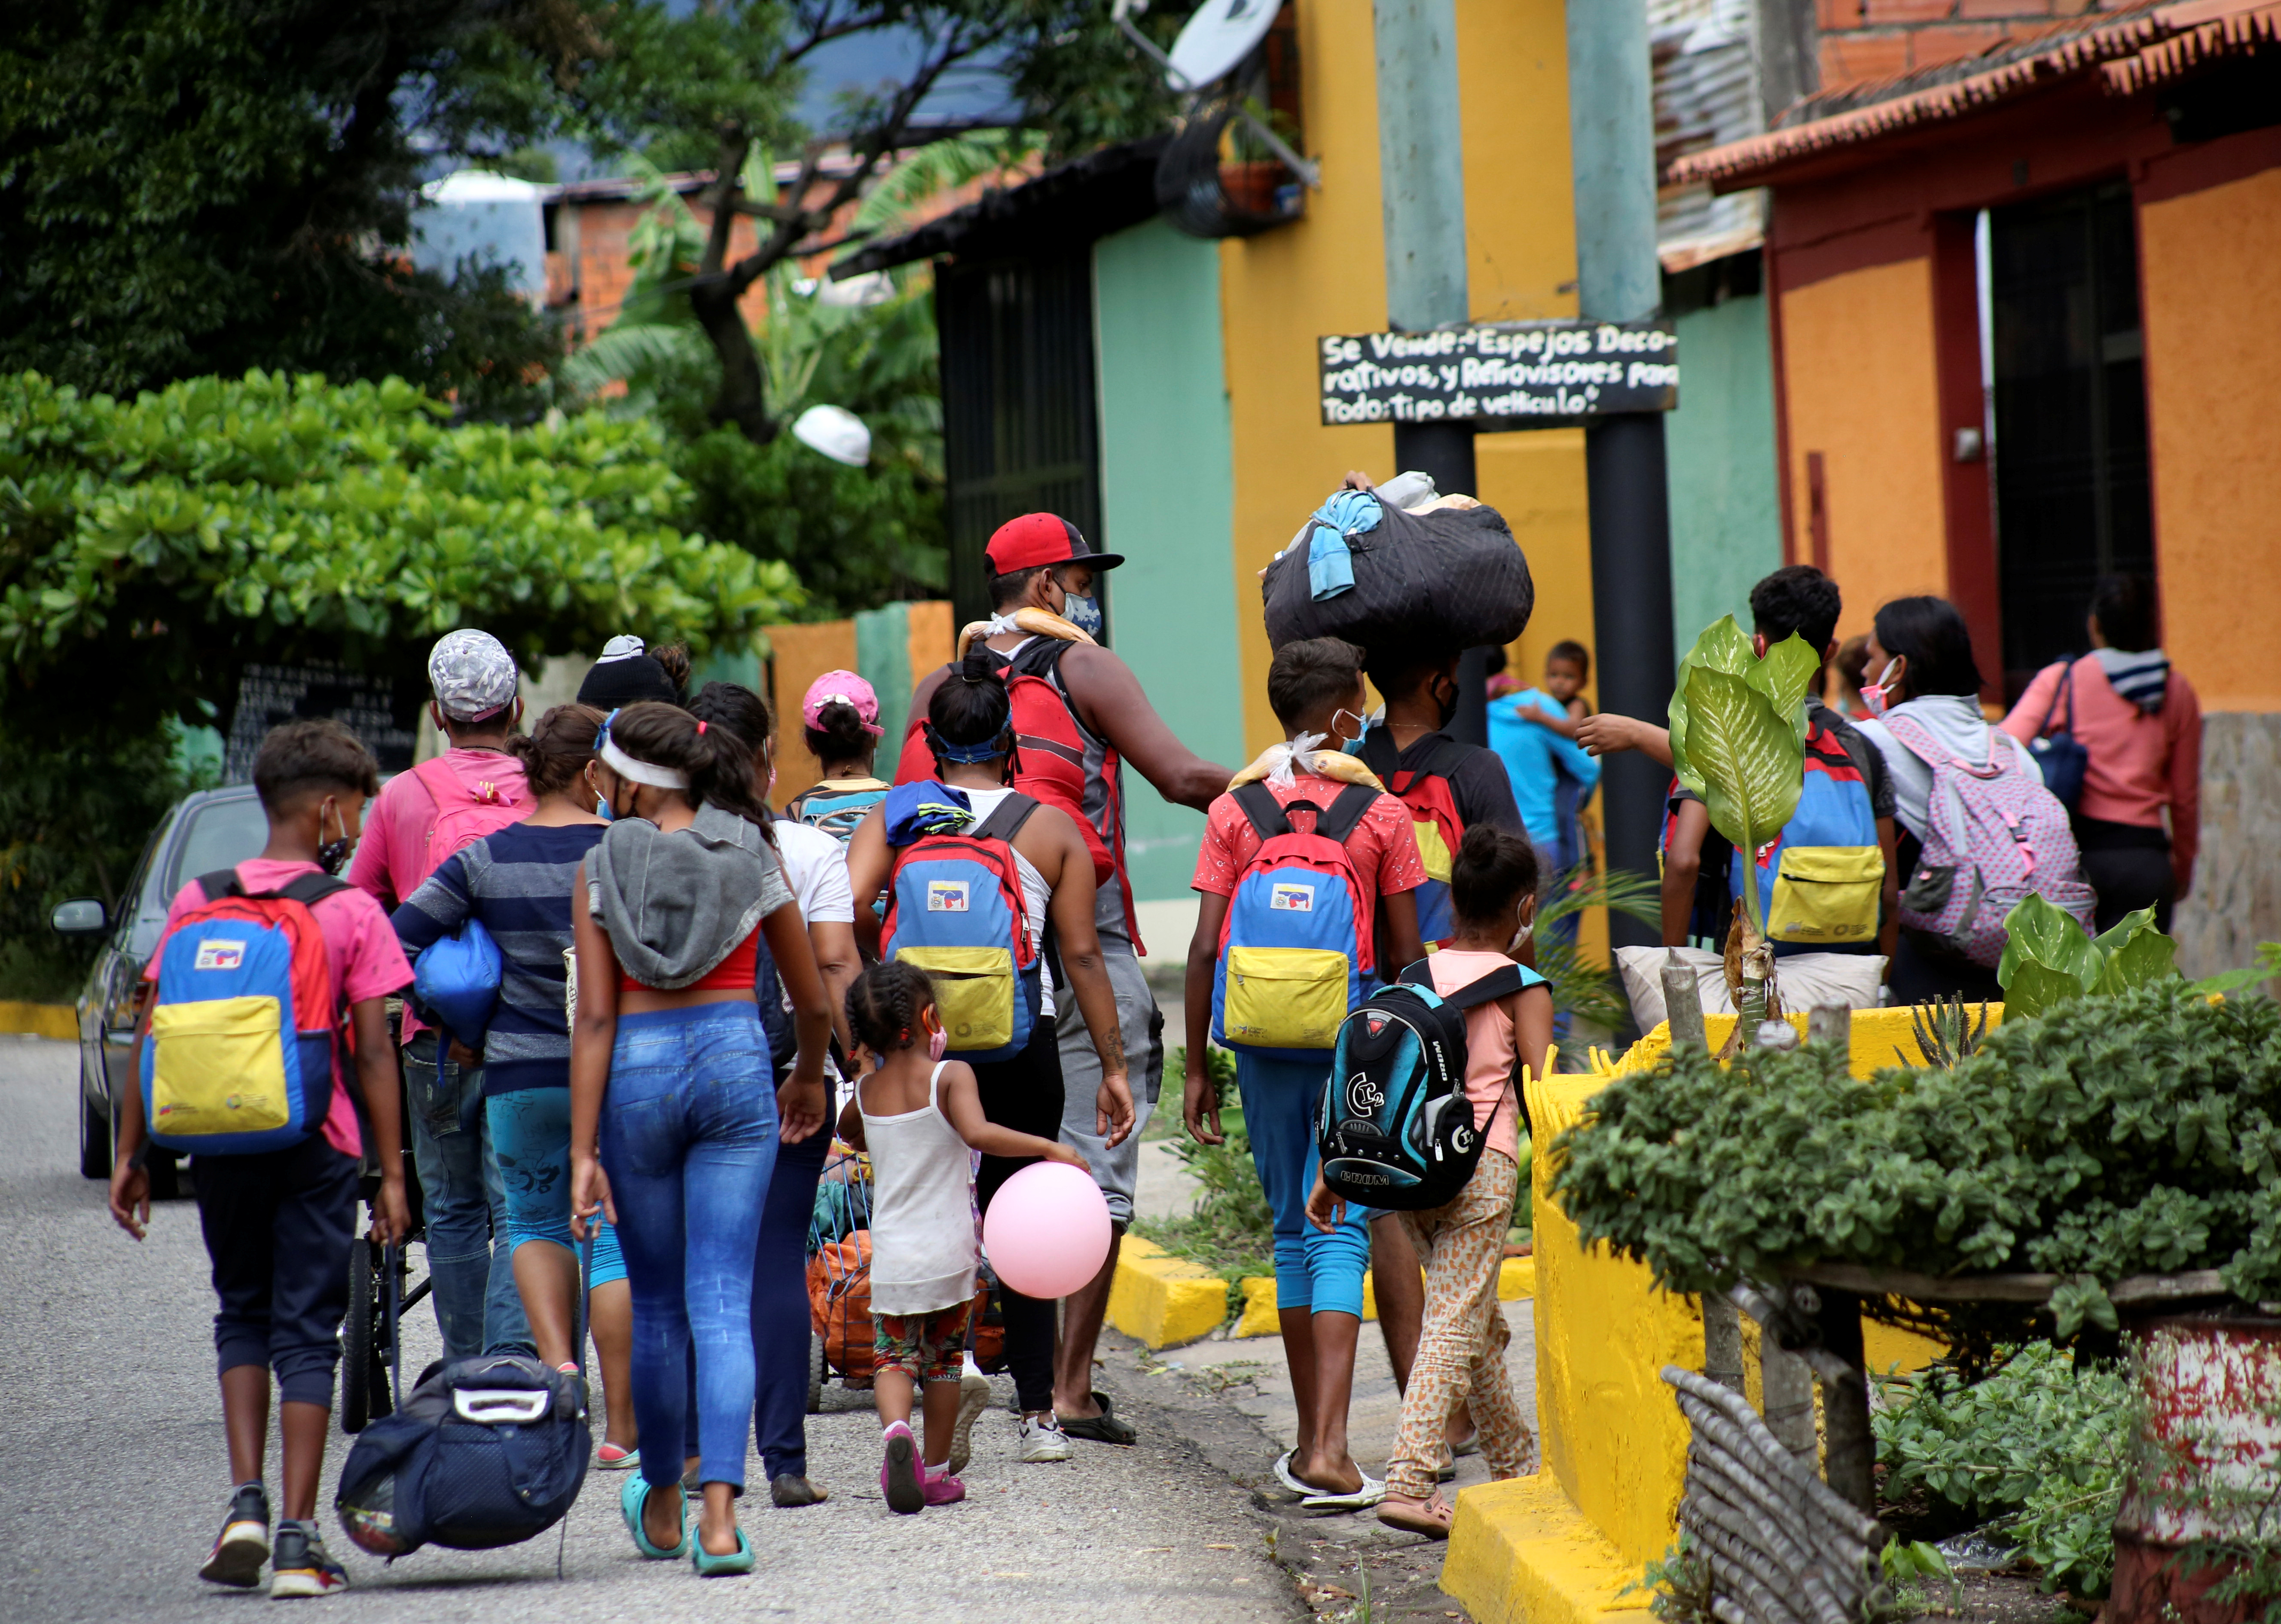 Colombia adquirirá dos millones de vacunas contra el coronavirus para venezolanos que se regularicen mediante el TPS